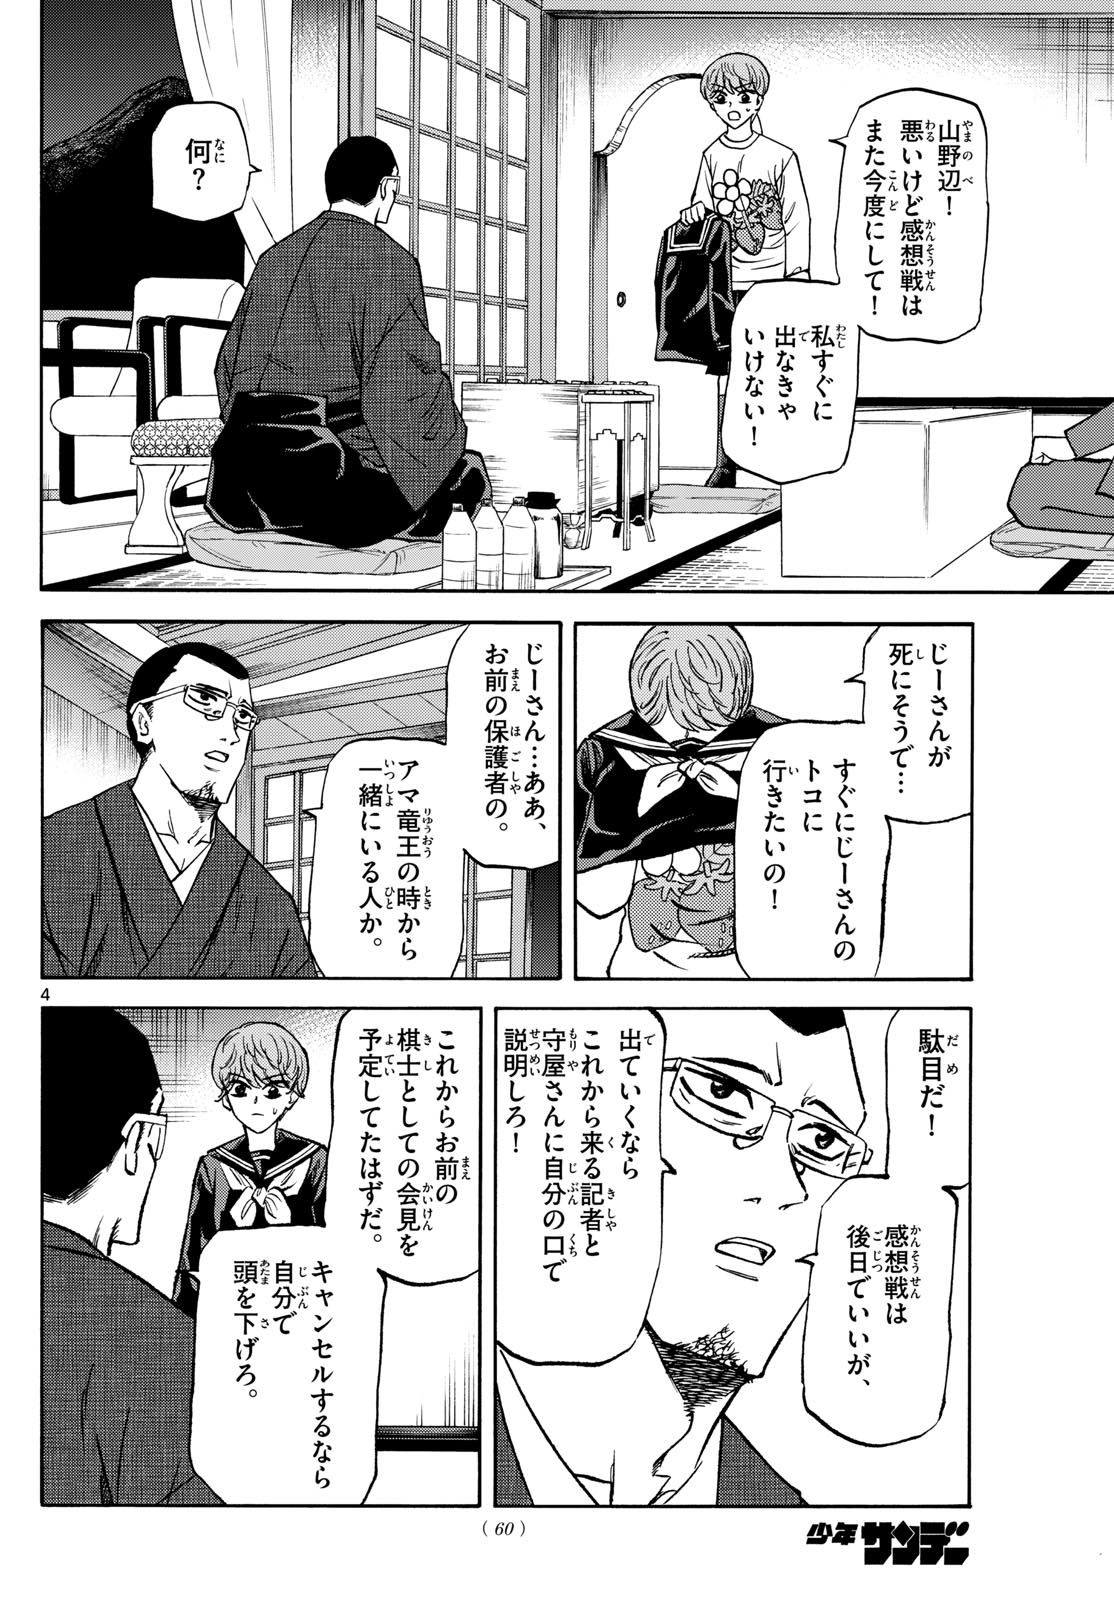 Tatsu to Ichigo - Chapter 180 - Page 4